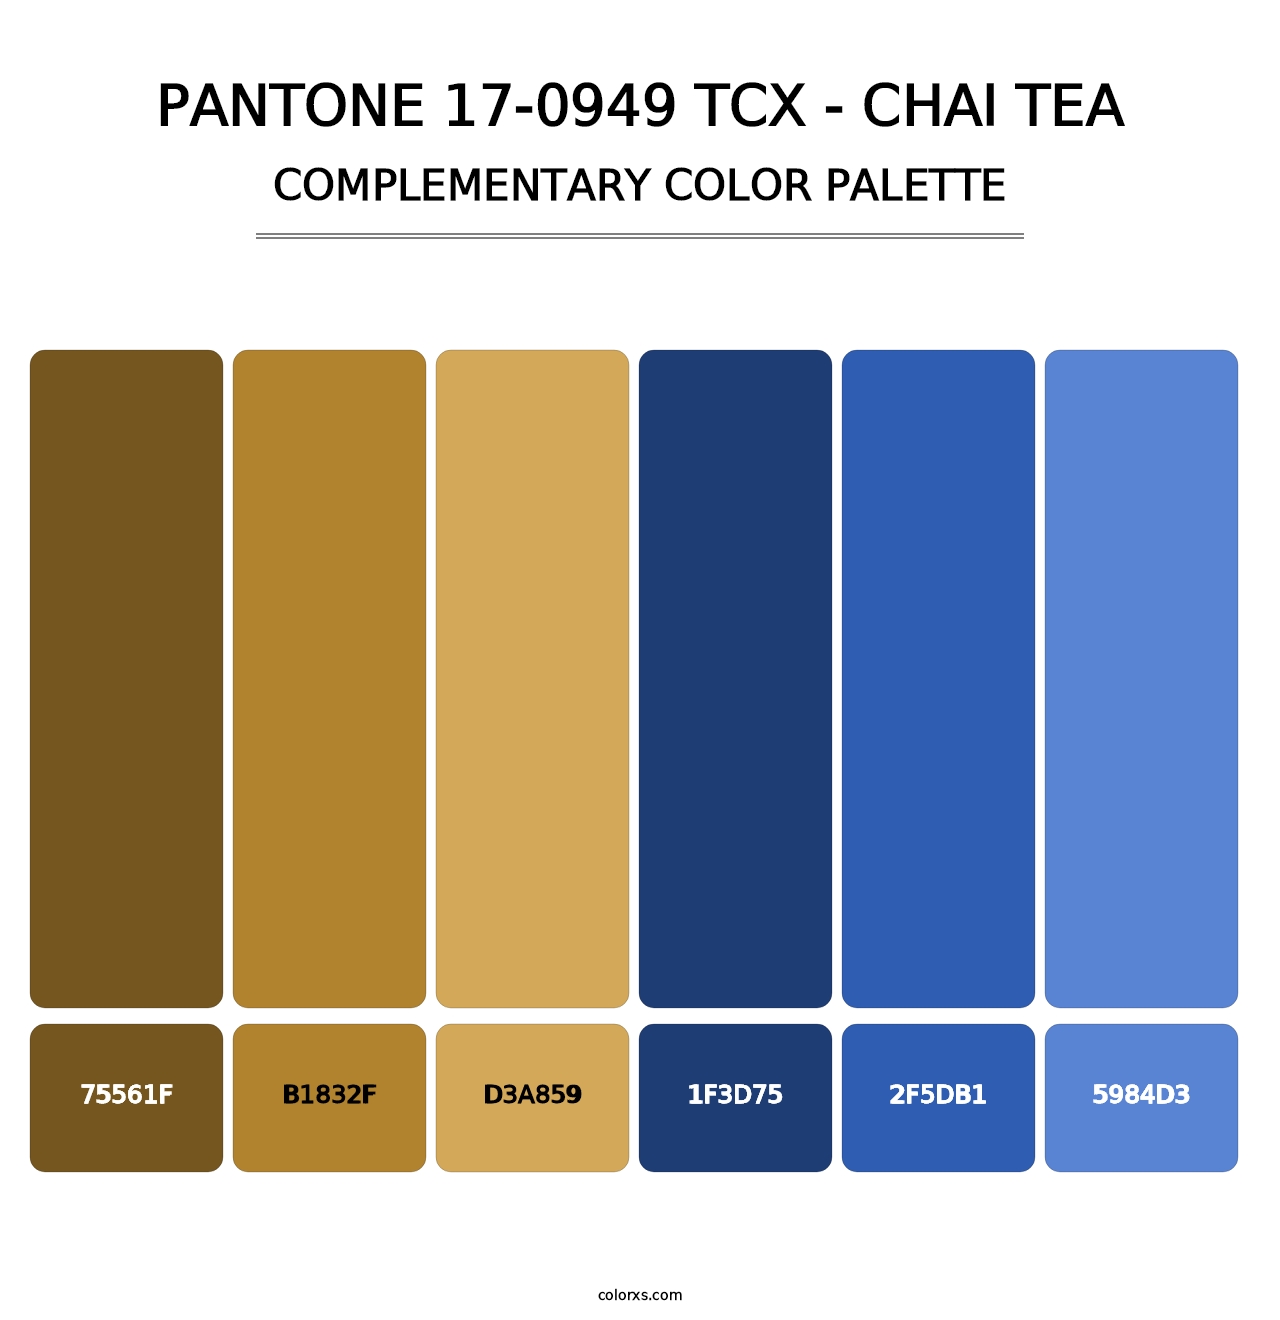 PANTONE 17-0949 TCX - Chai Tea - Complementary Color Palette